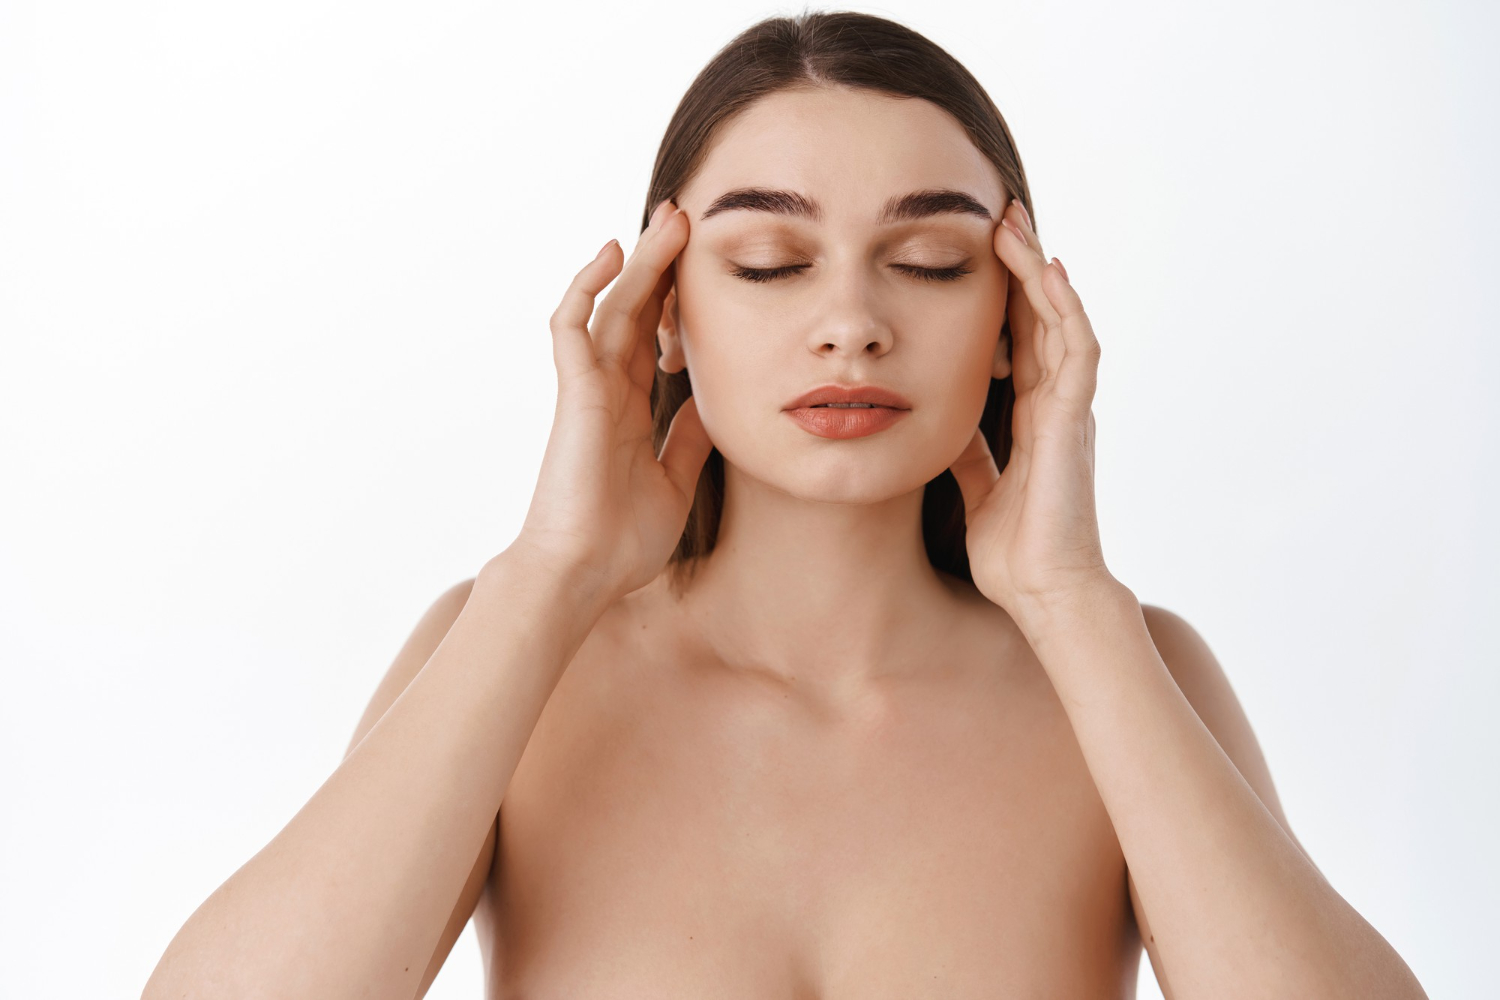 O esqualano possui alto potencial de hidratação, sendo muito utilizado nos cosméticos para a pele e o cabelo